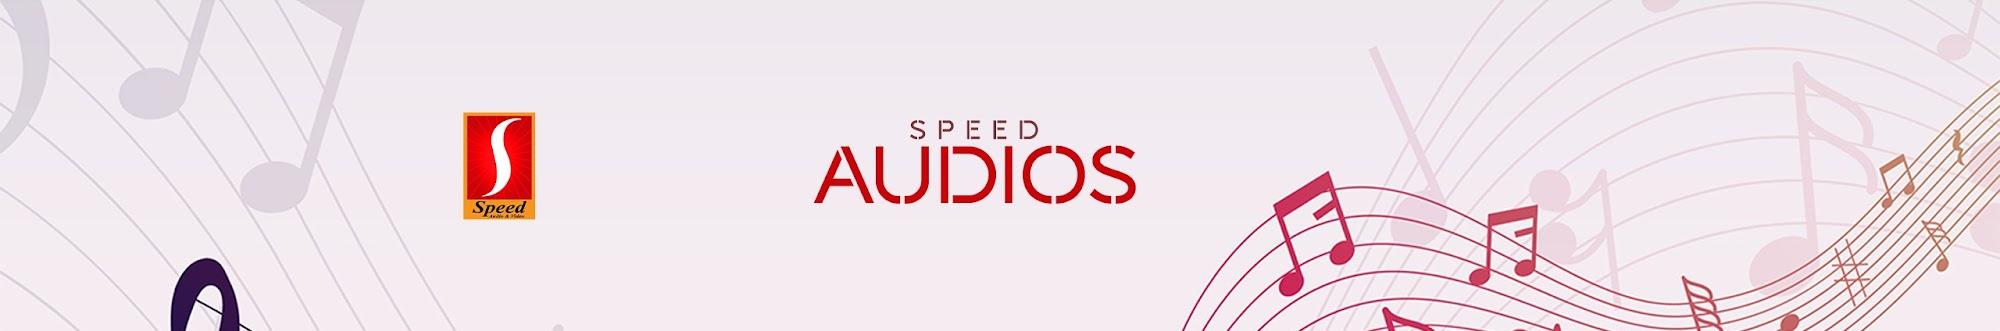 Speed Audios